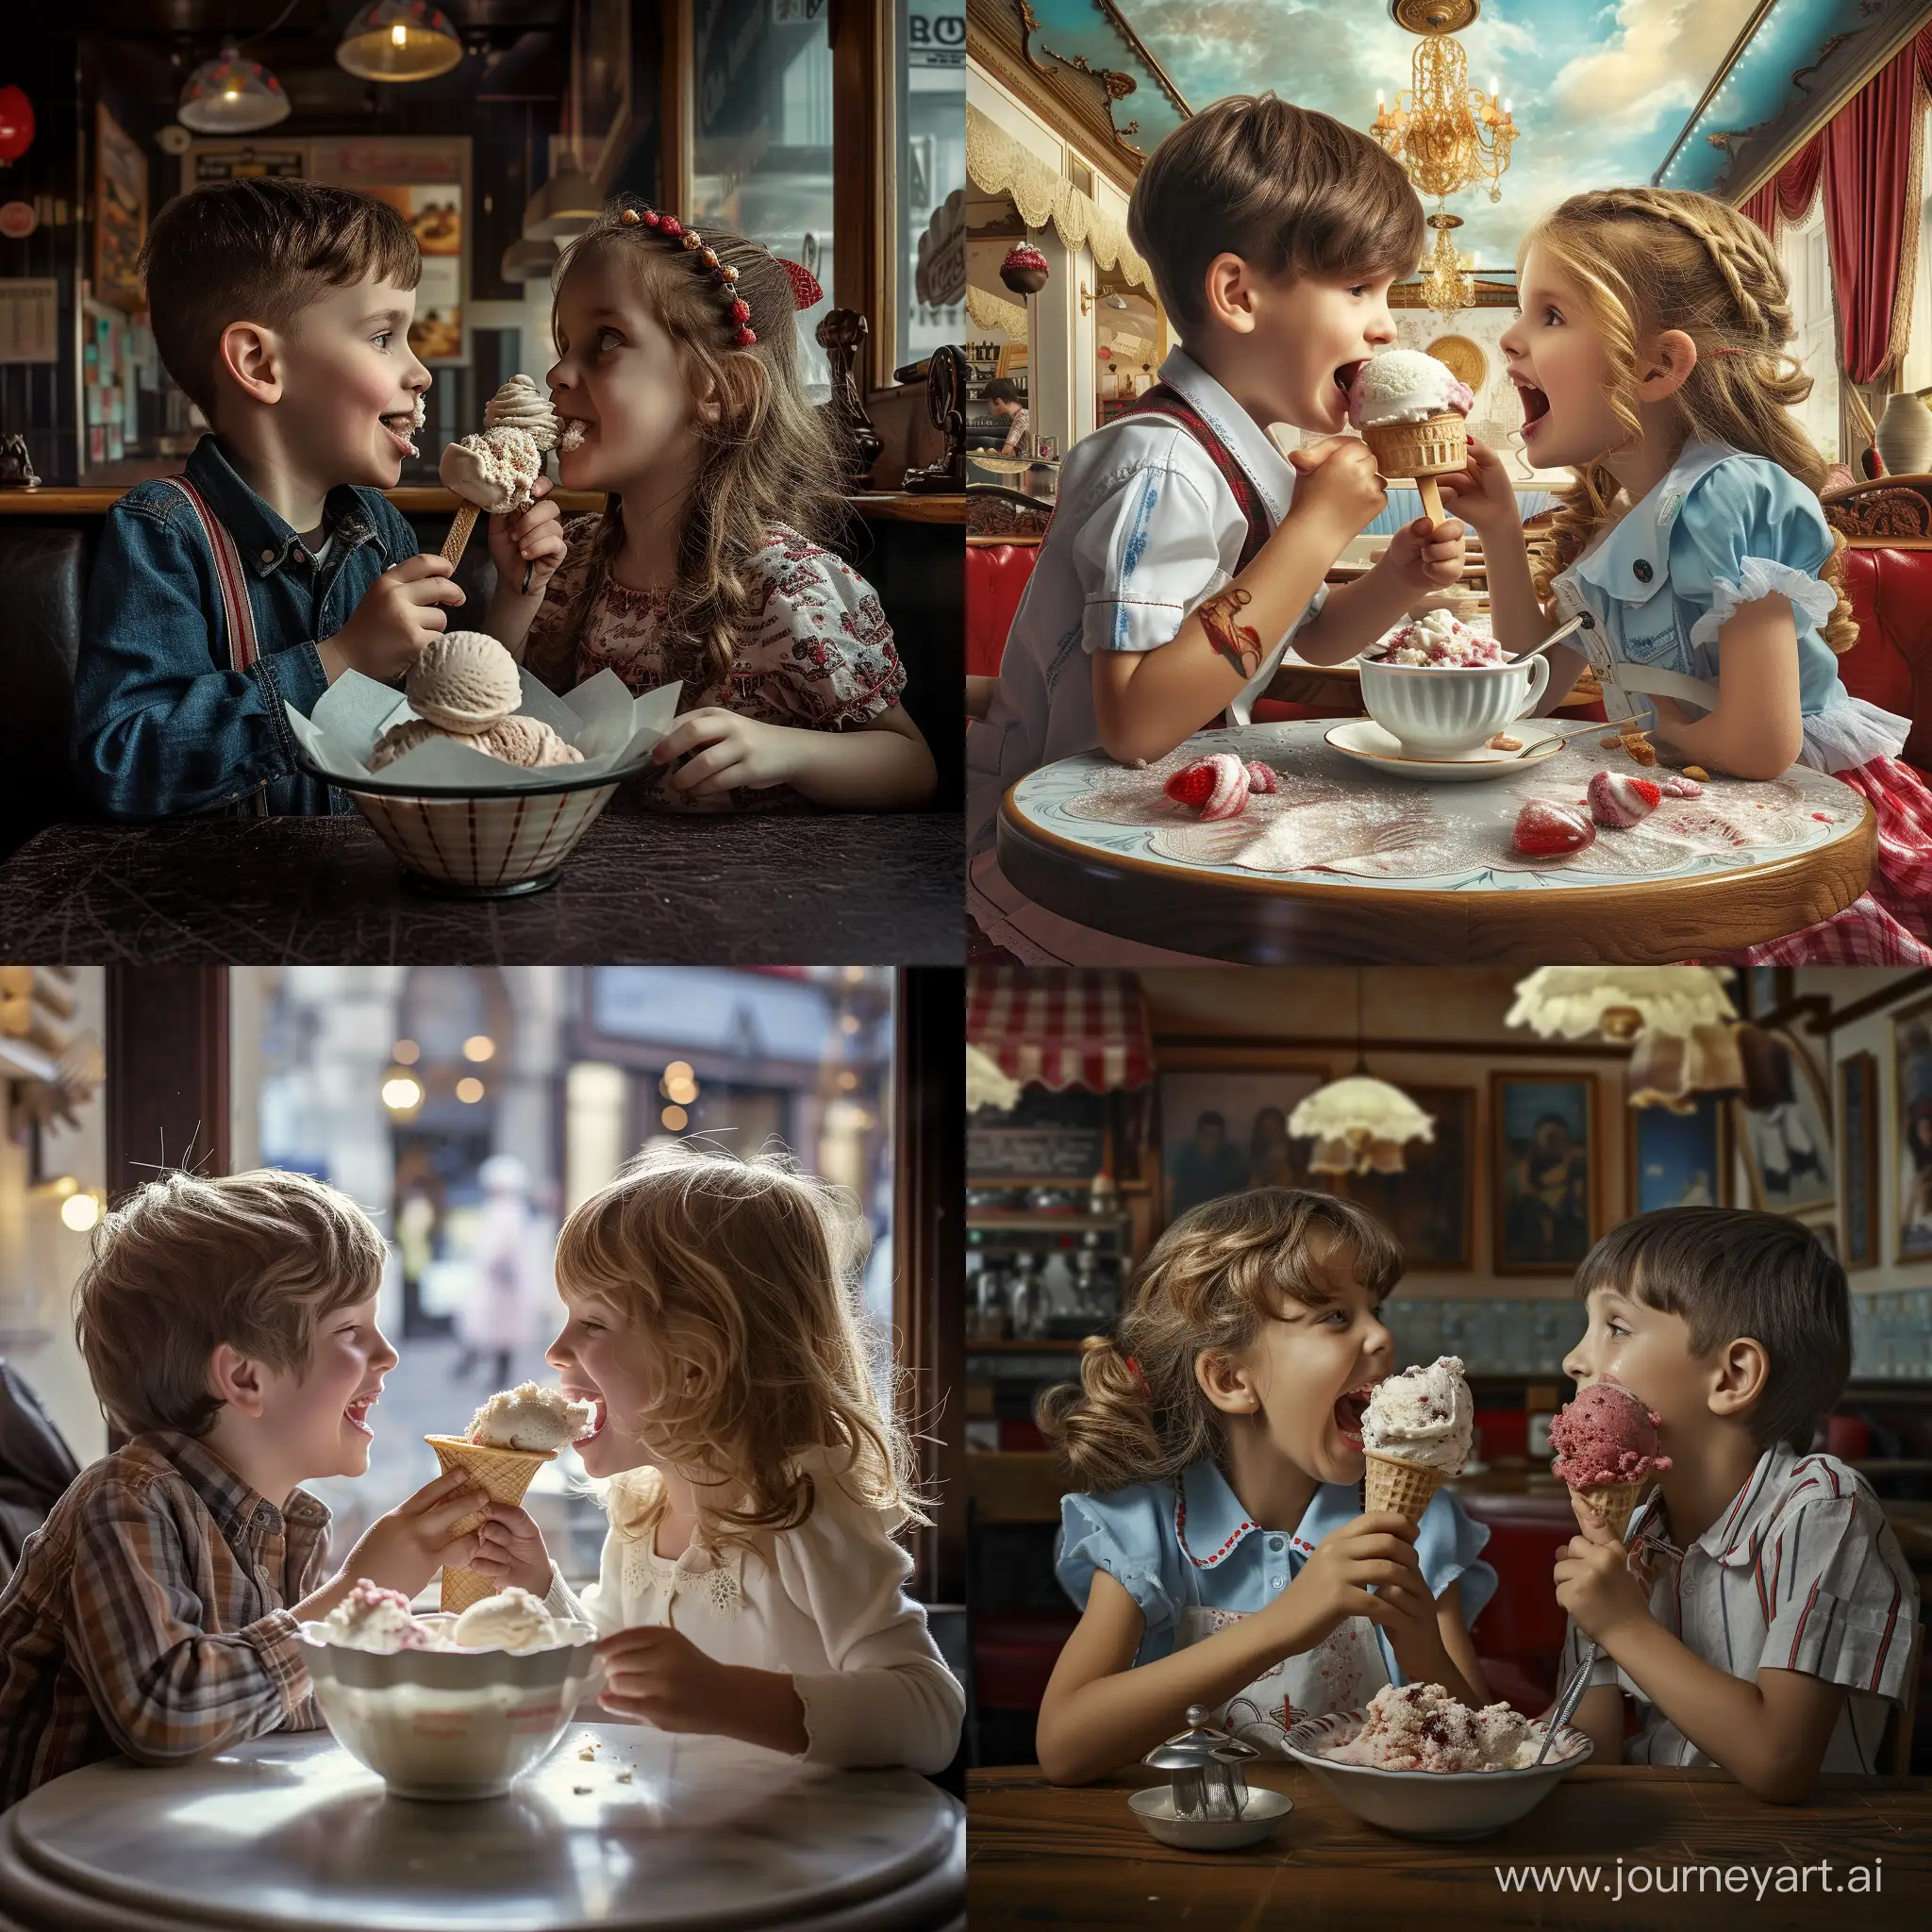 Мальчик с девочкой едят очень вкусное мороженое в кафе, они очень радостные и оживлённо общаются друг с другом, фотография, гиперреализм, высокое разрешение